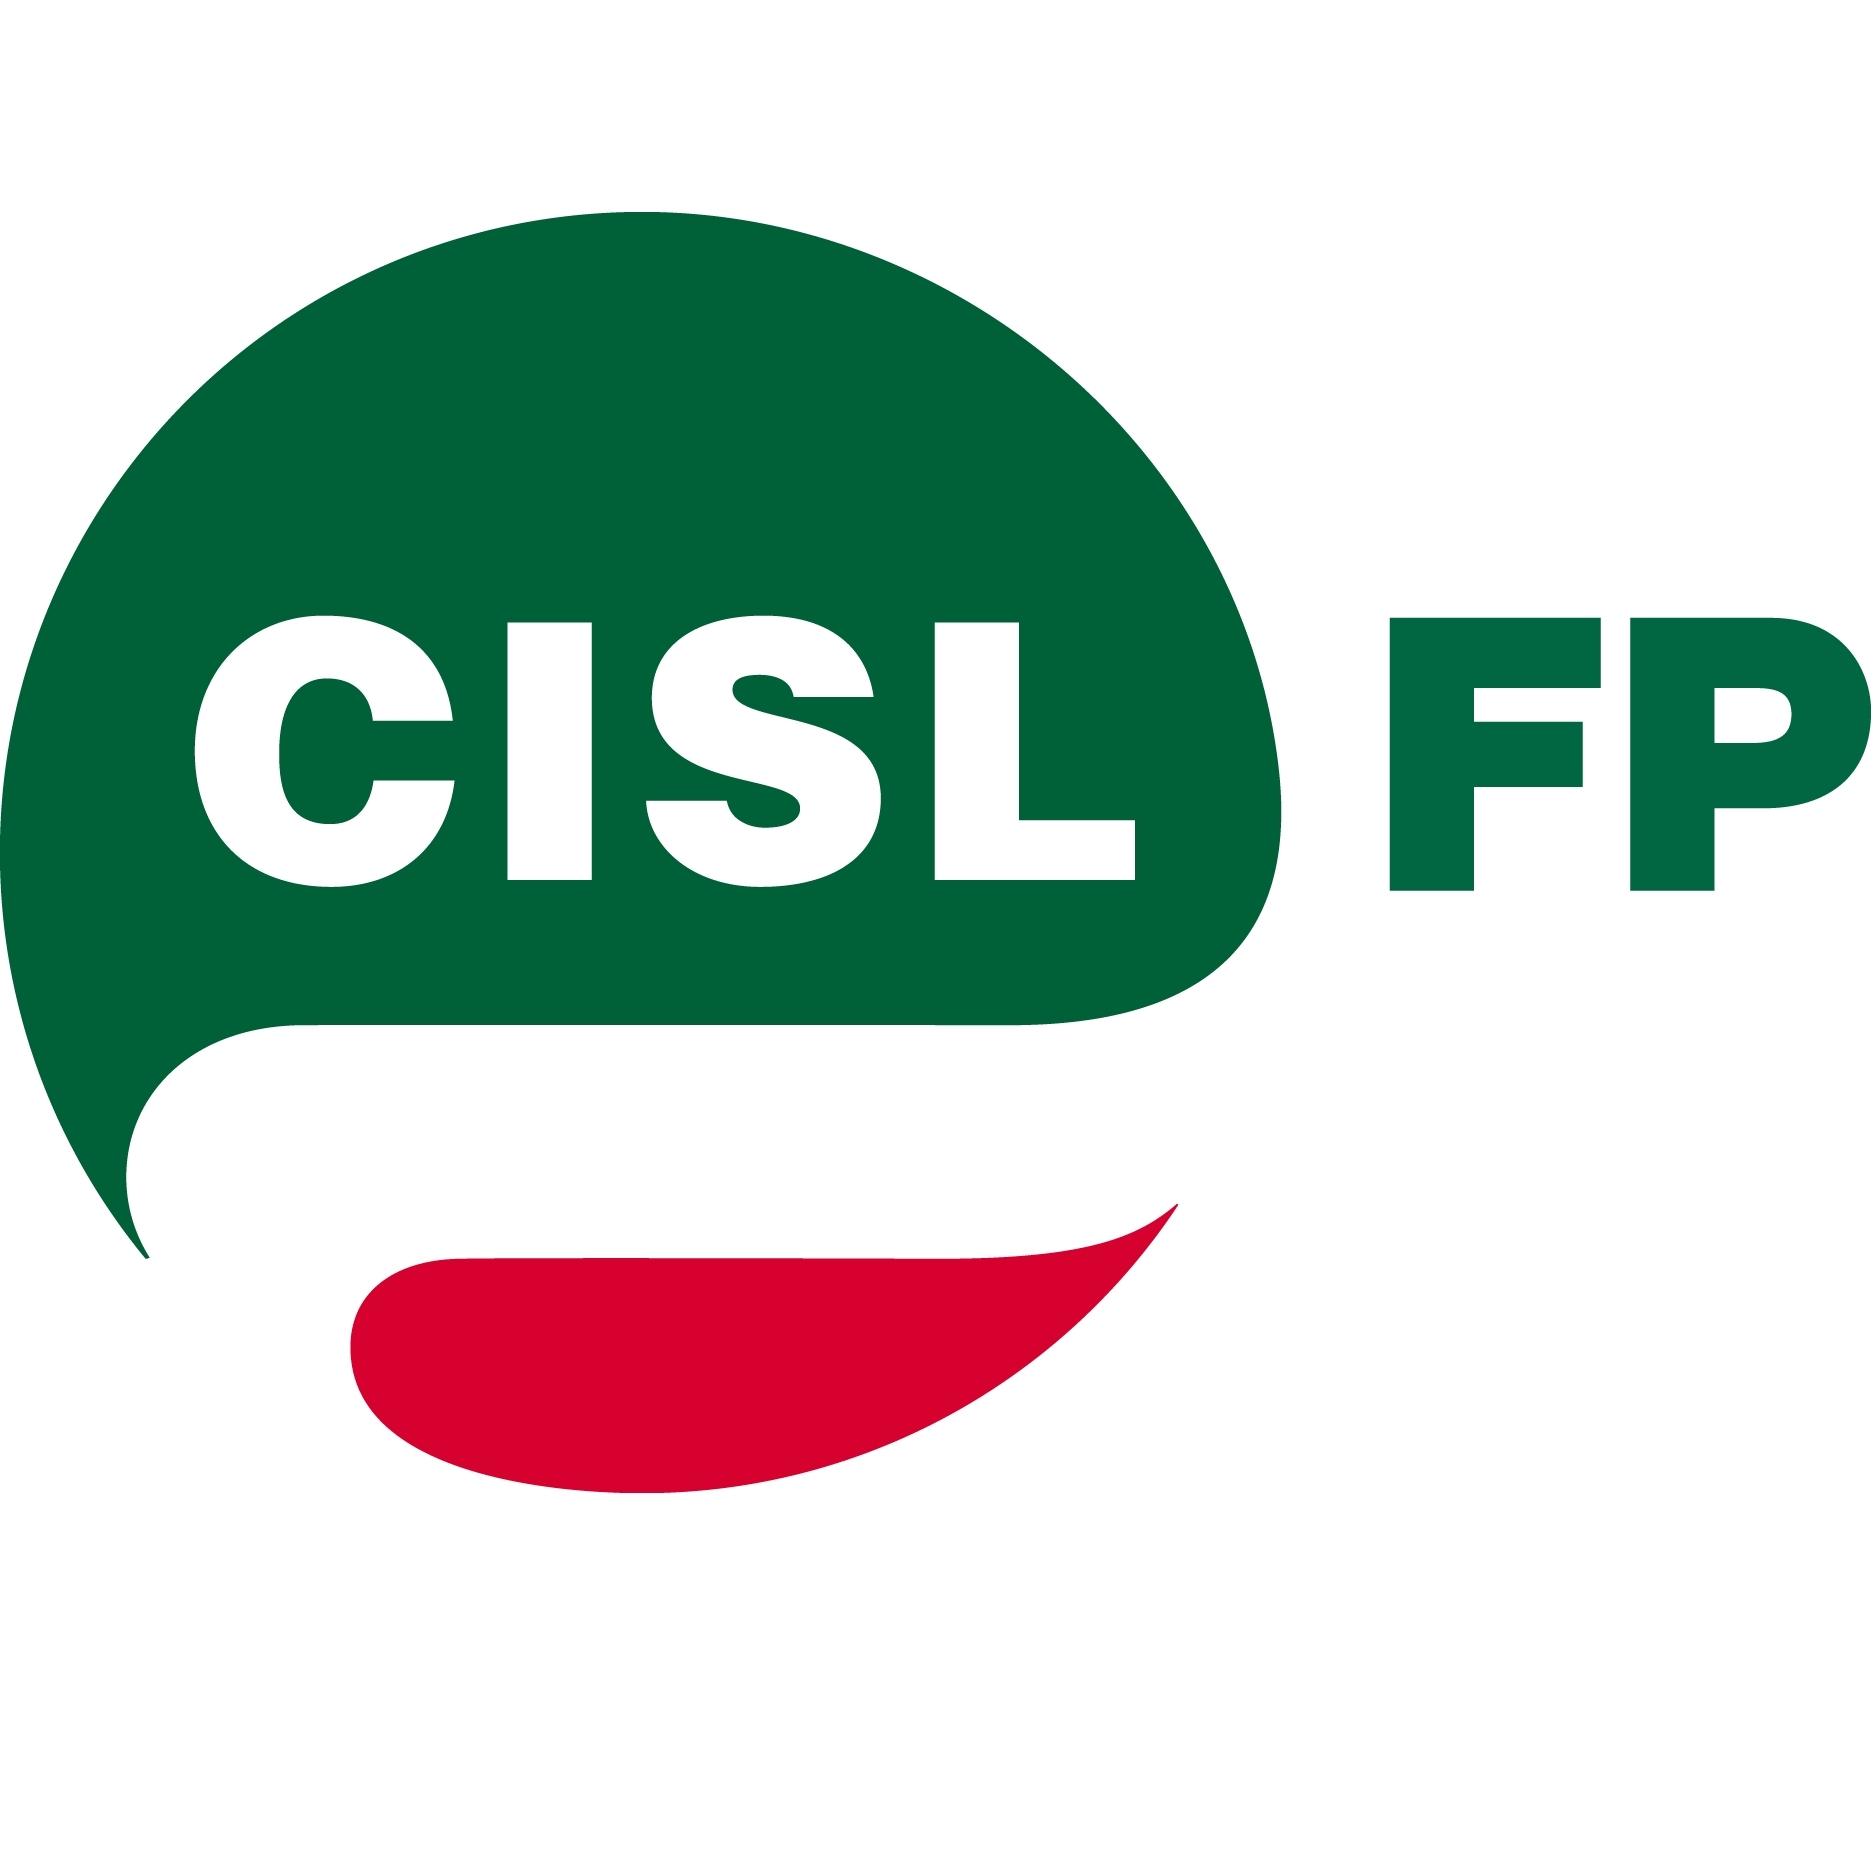 CISL_FP